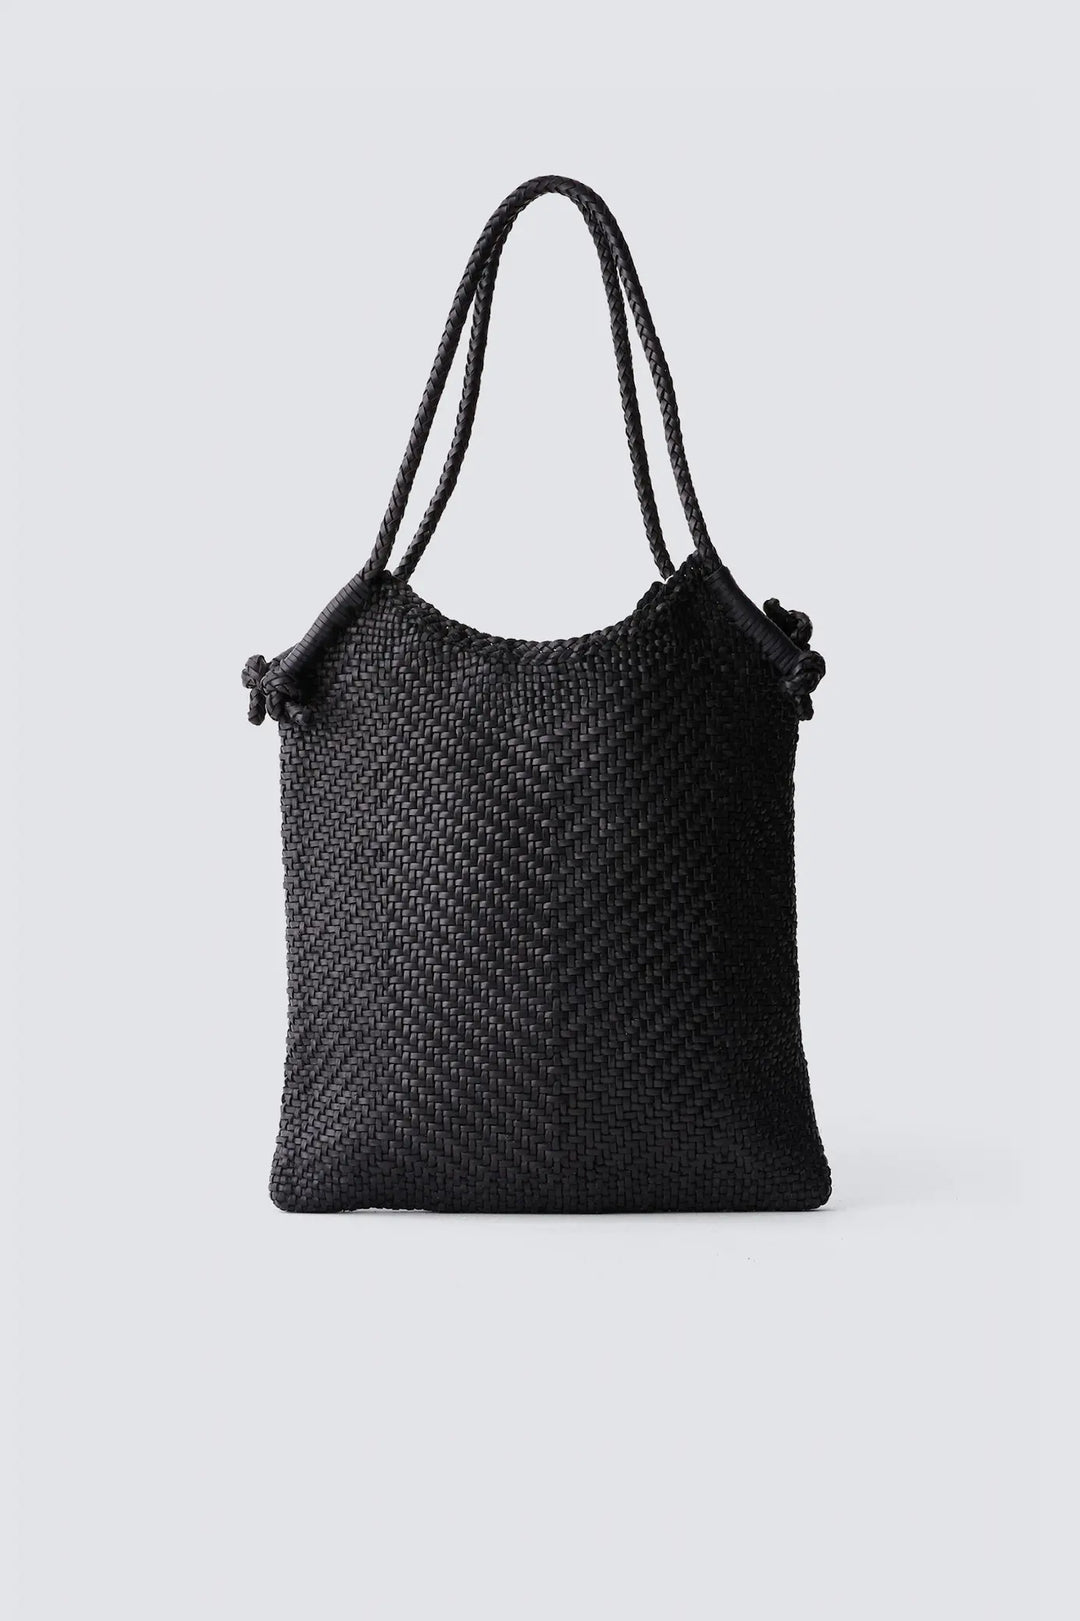 Dragon Diffusion - Minga Tote Black - Woven Leather Bag Handmade